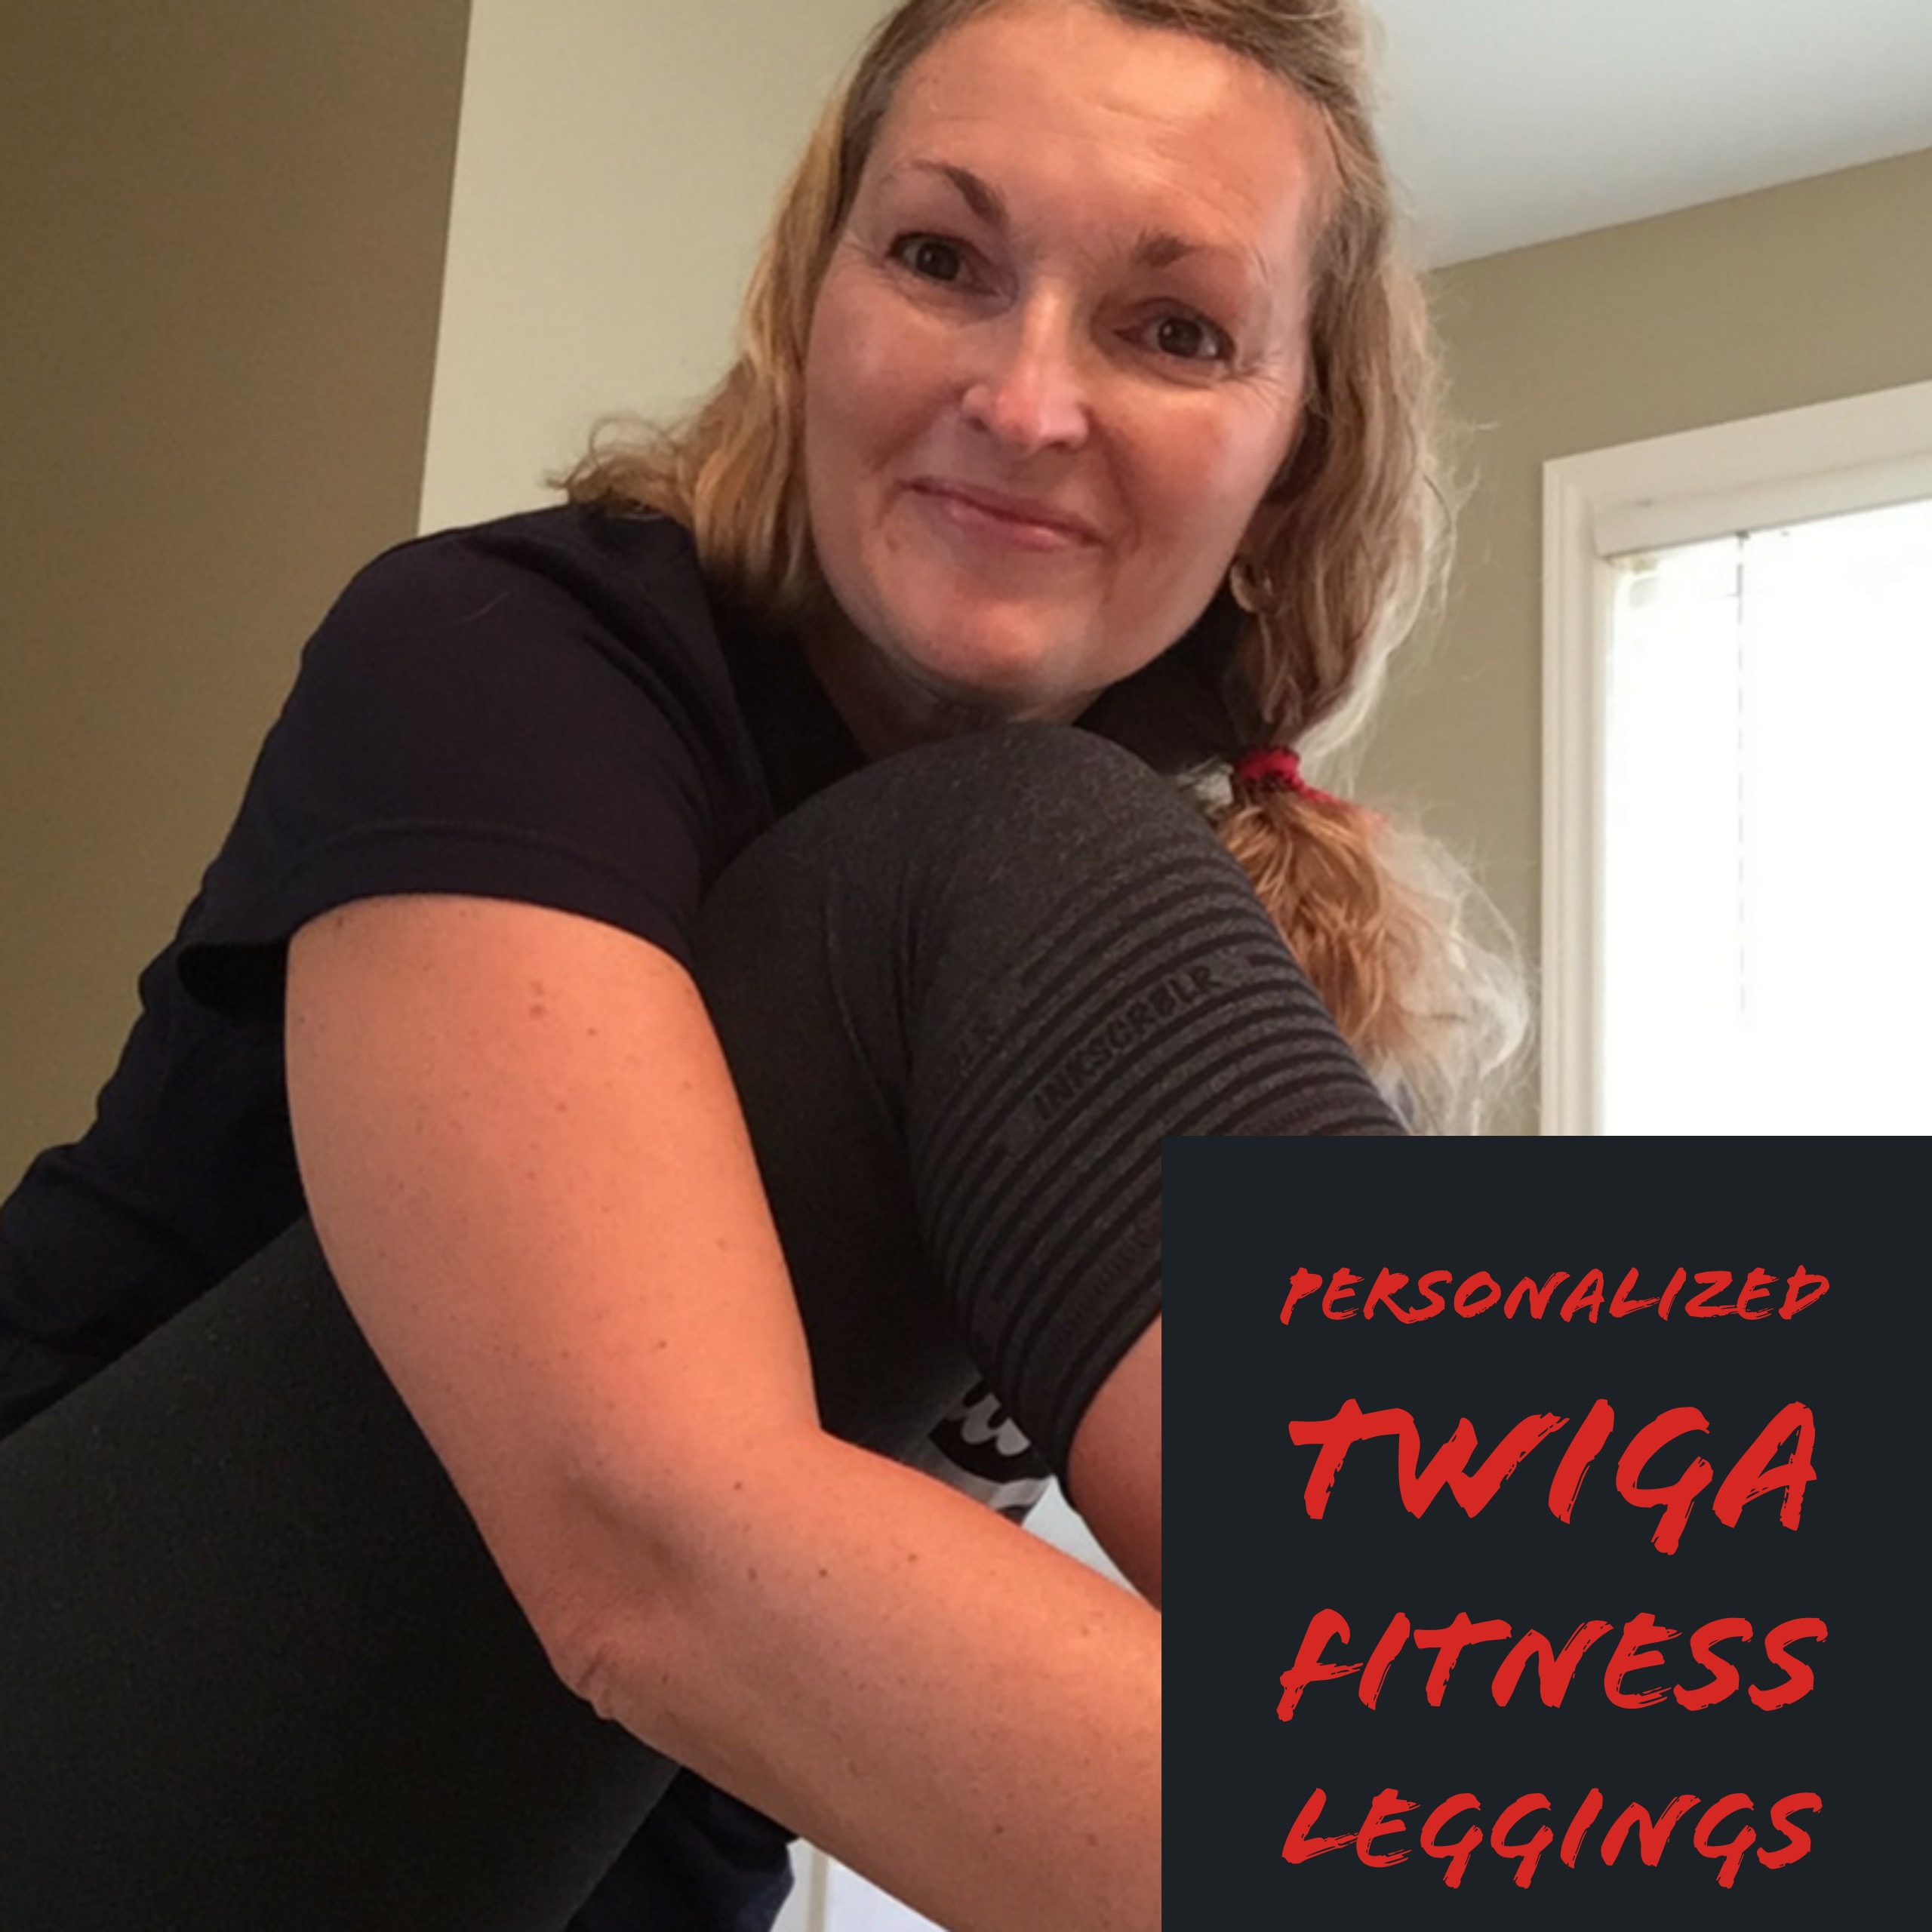 twiga_fitness_leggings